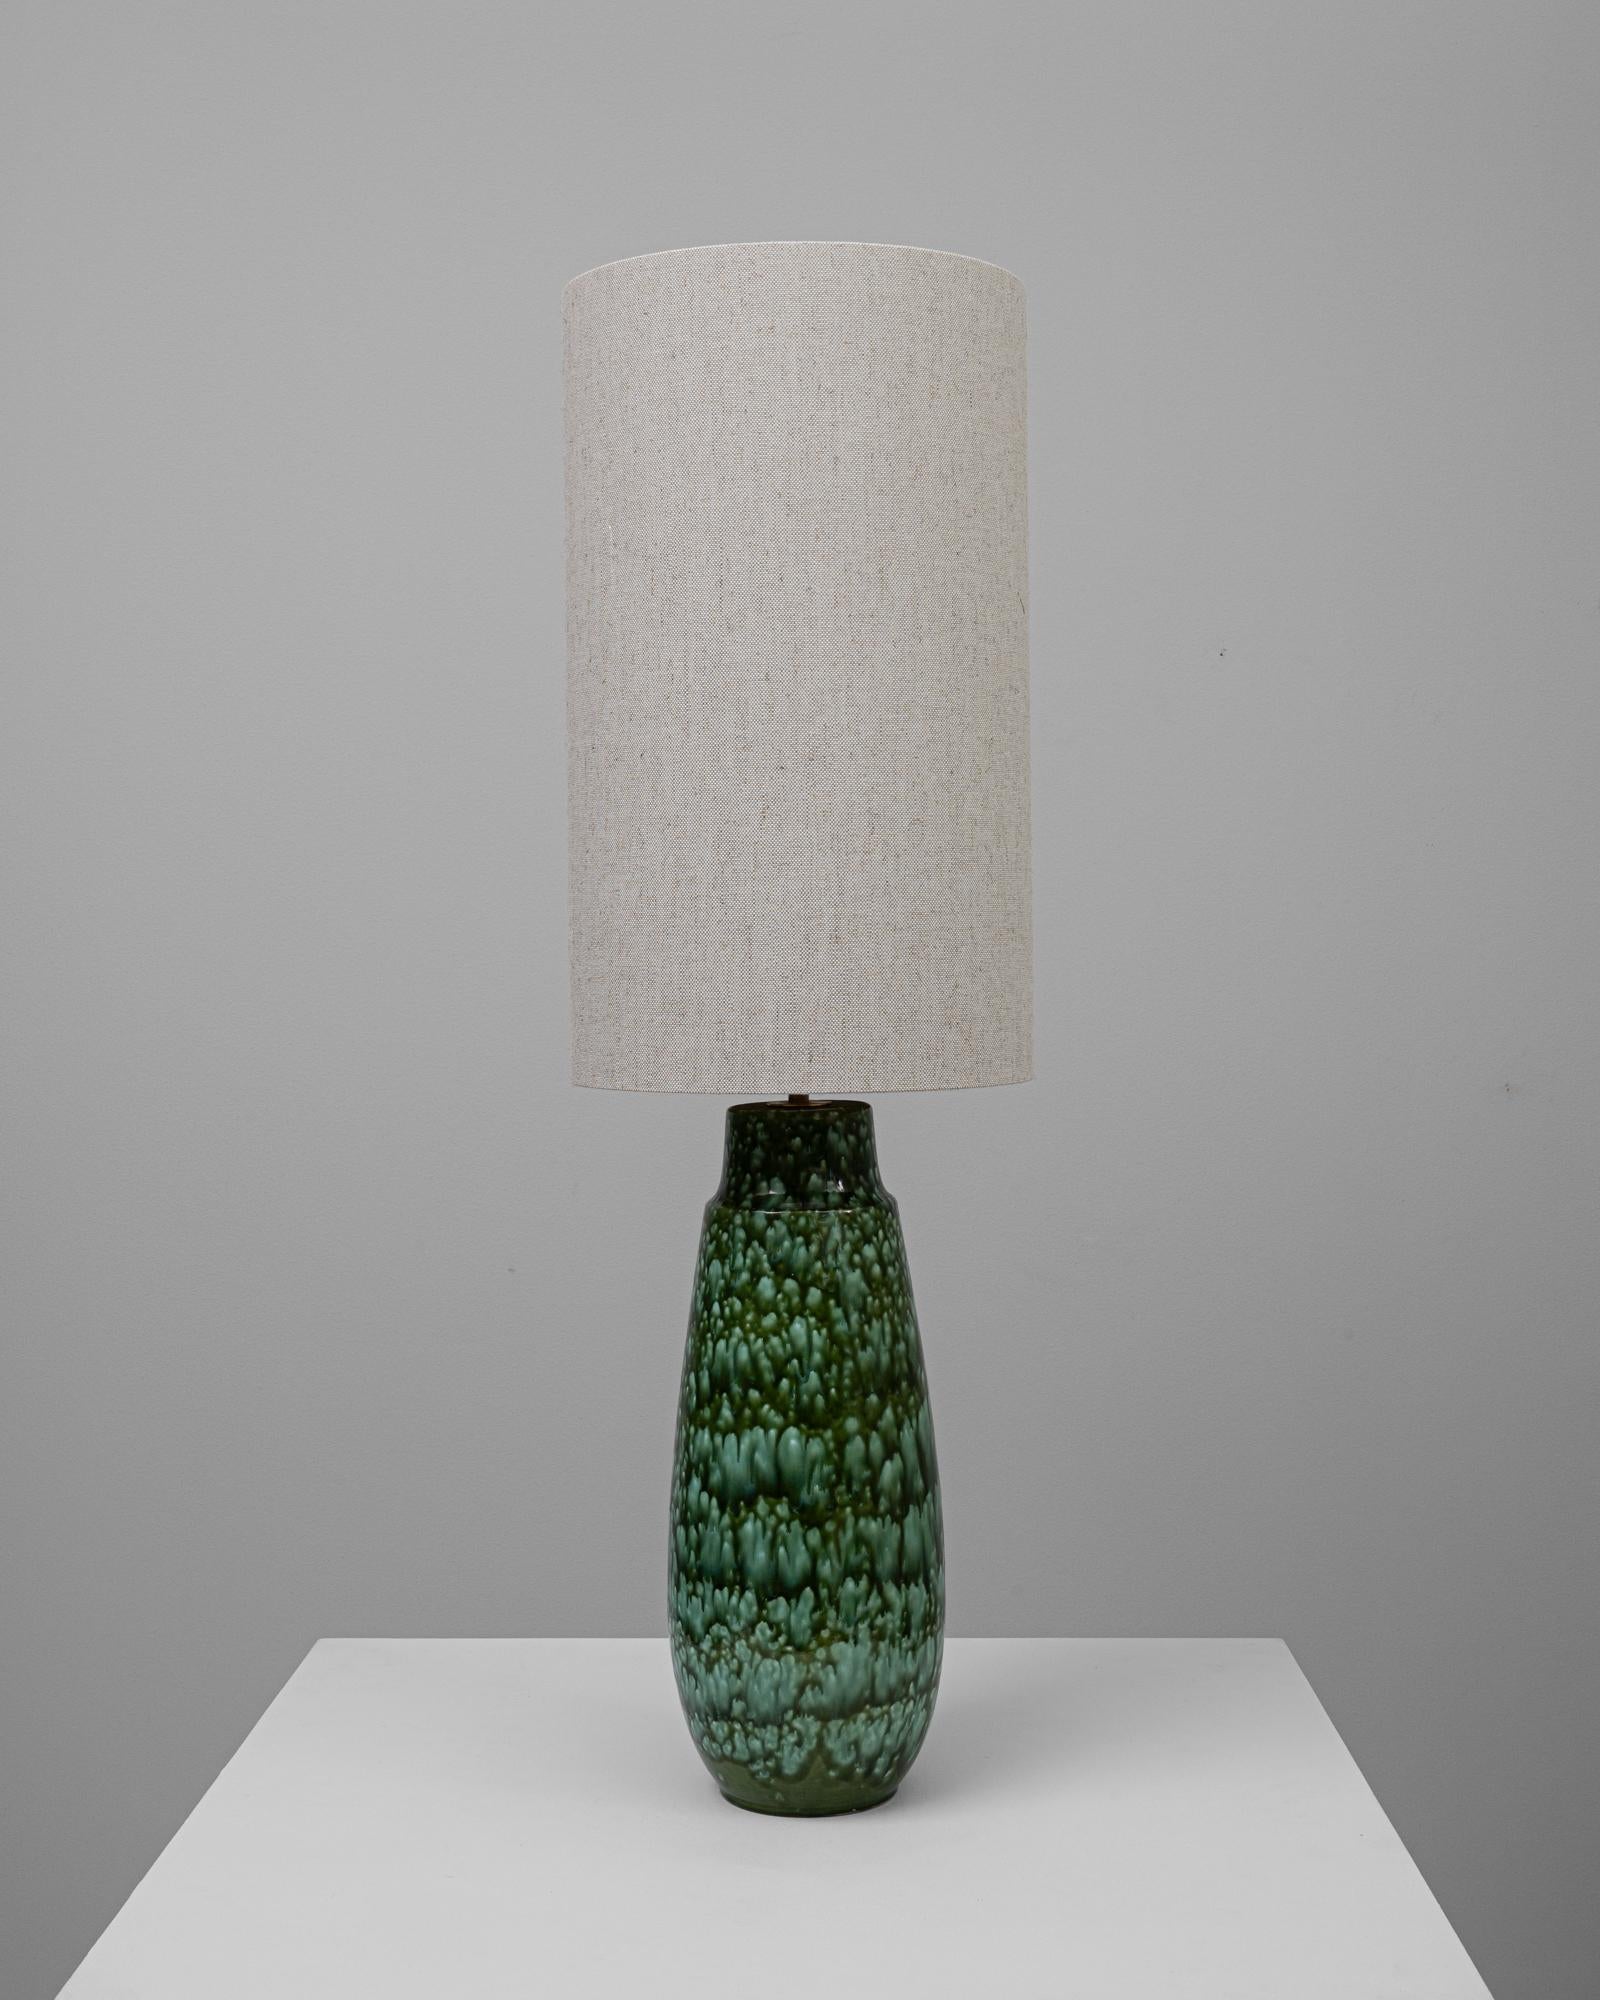 Cette lampe de table en céramique allemande du XXe siècle présente une base qui s'inspire des textures luxuriantes du monde naturel. Sa glaçure d'un vert éclatant, avec un motif en relief unique, rappelle les écailles d'une pomme de pin ou le